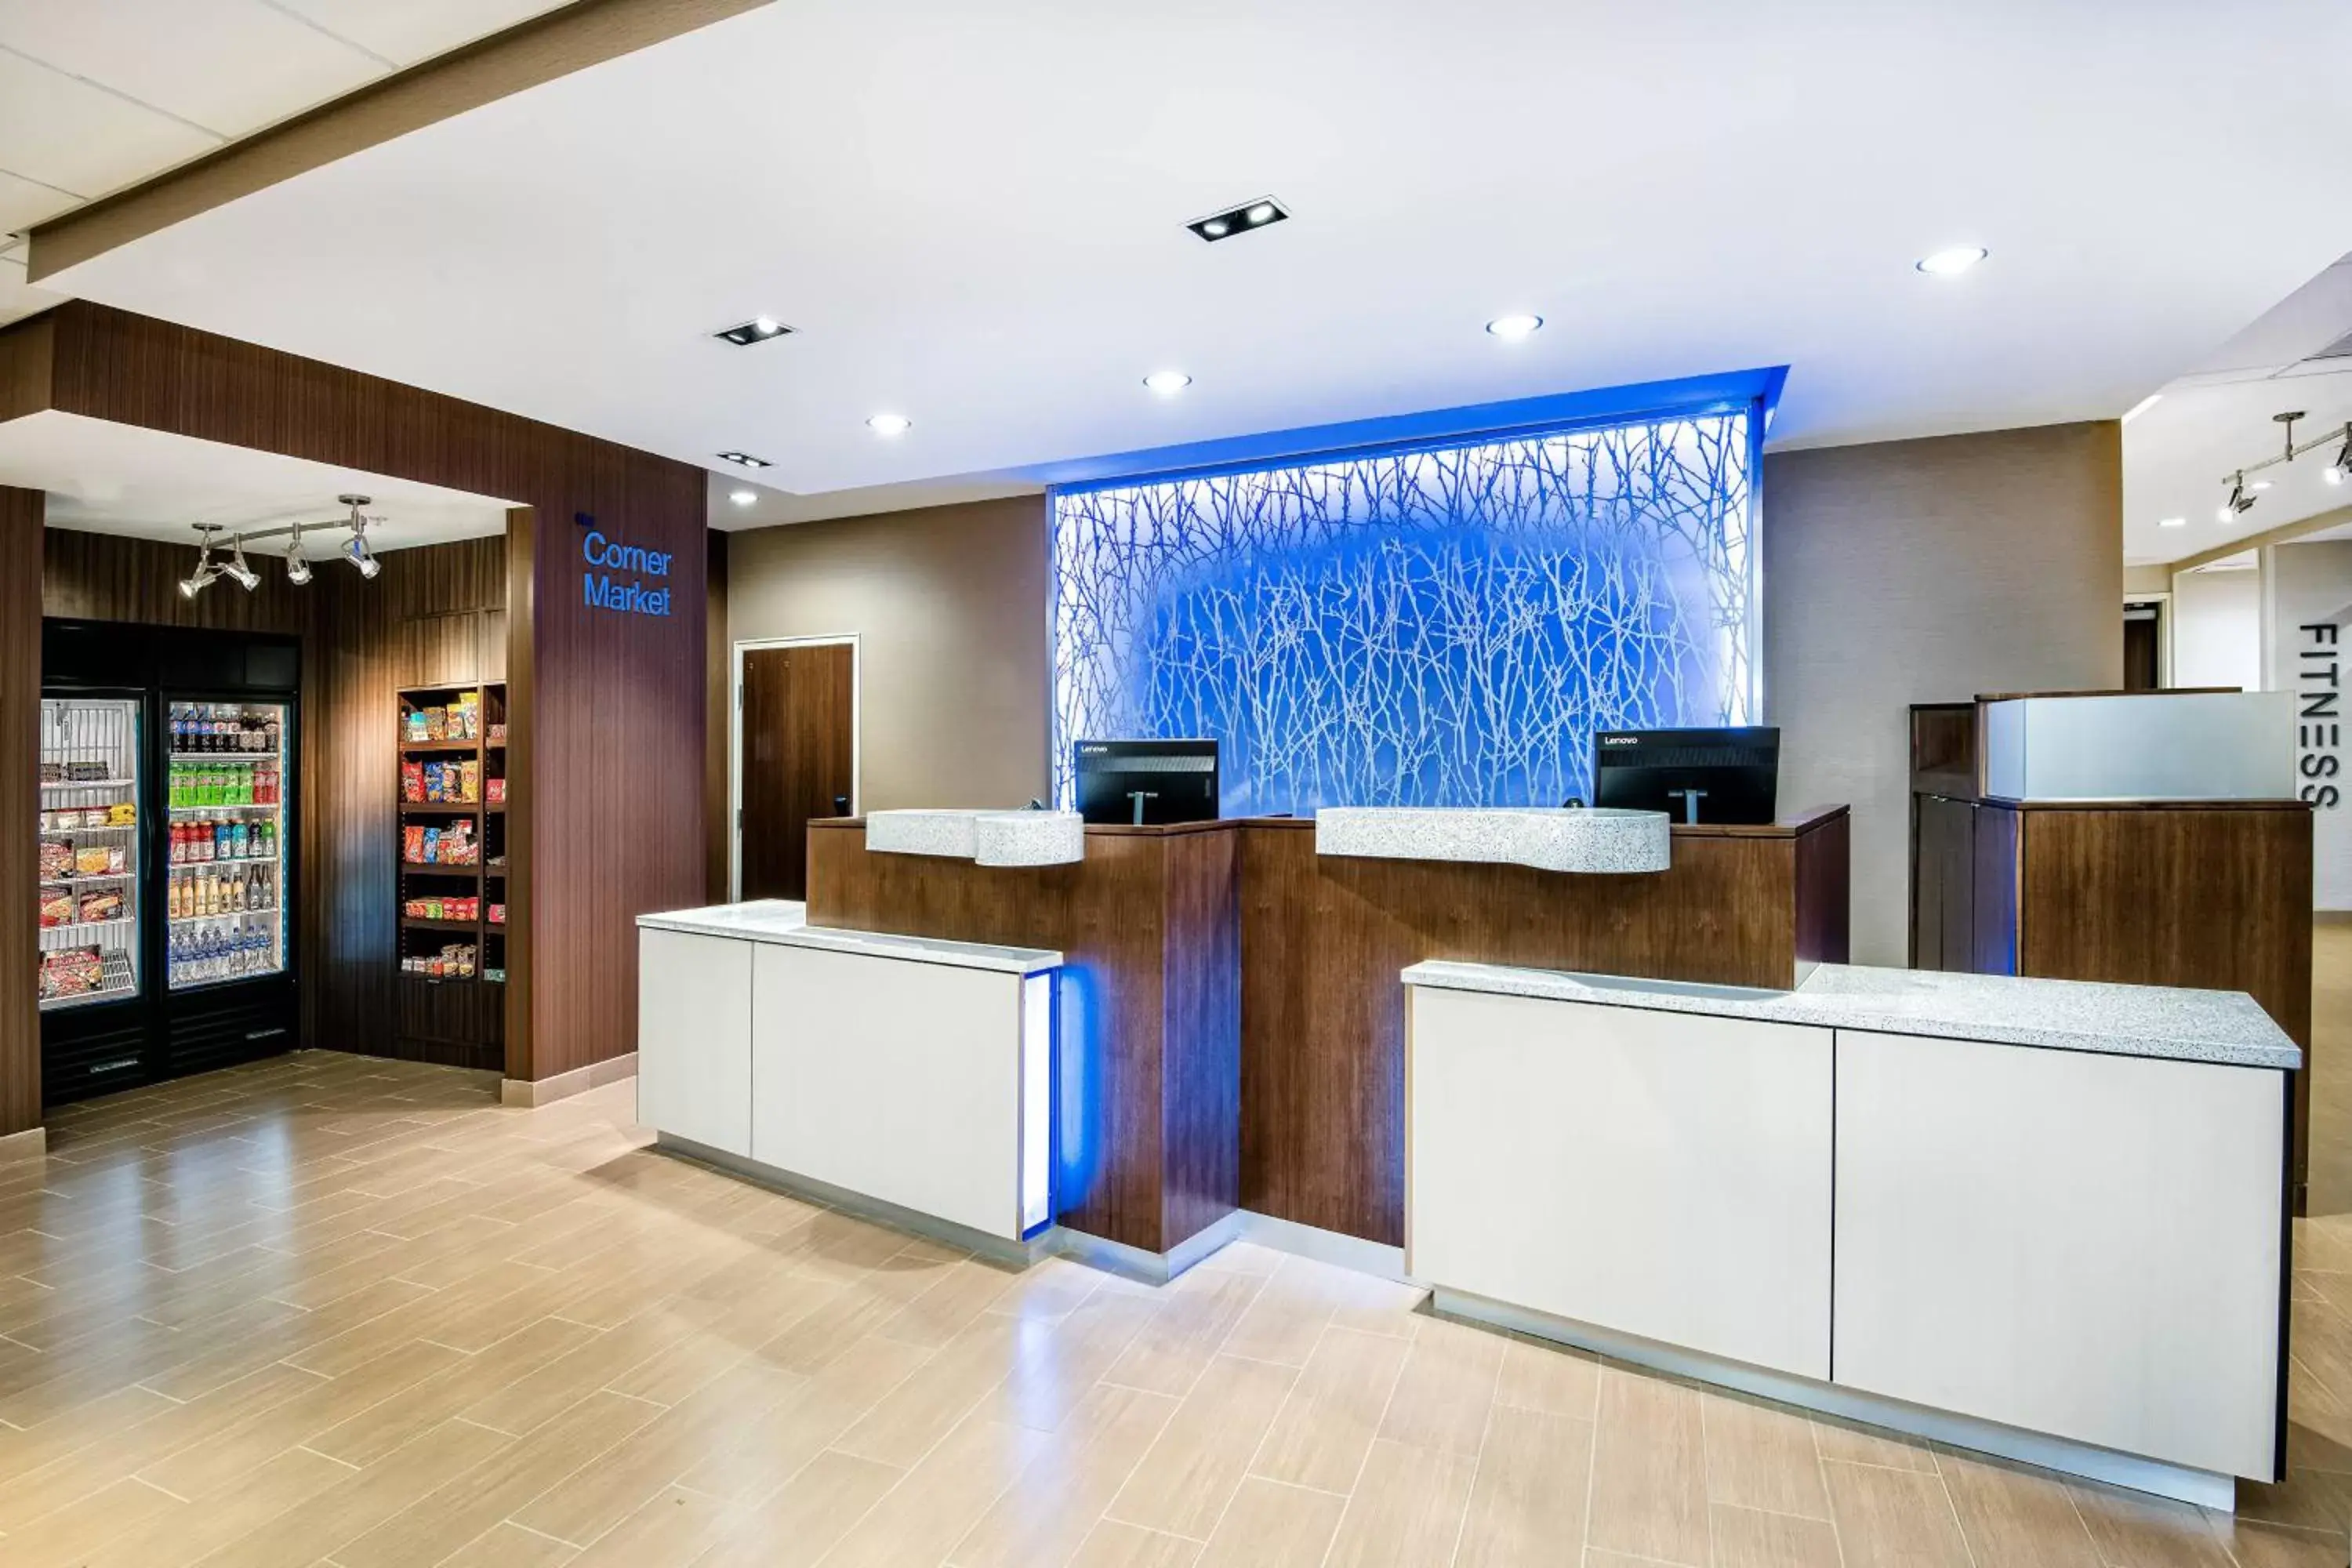 Lobby or reception, Lobby/Reception in Fairfield Inn & Suites by Marriott Van